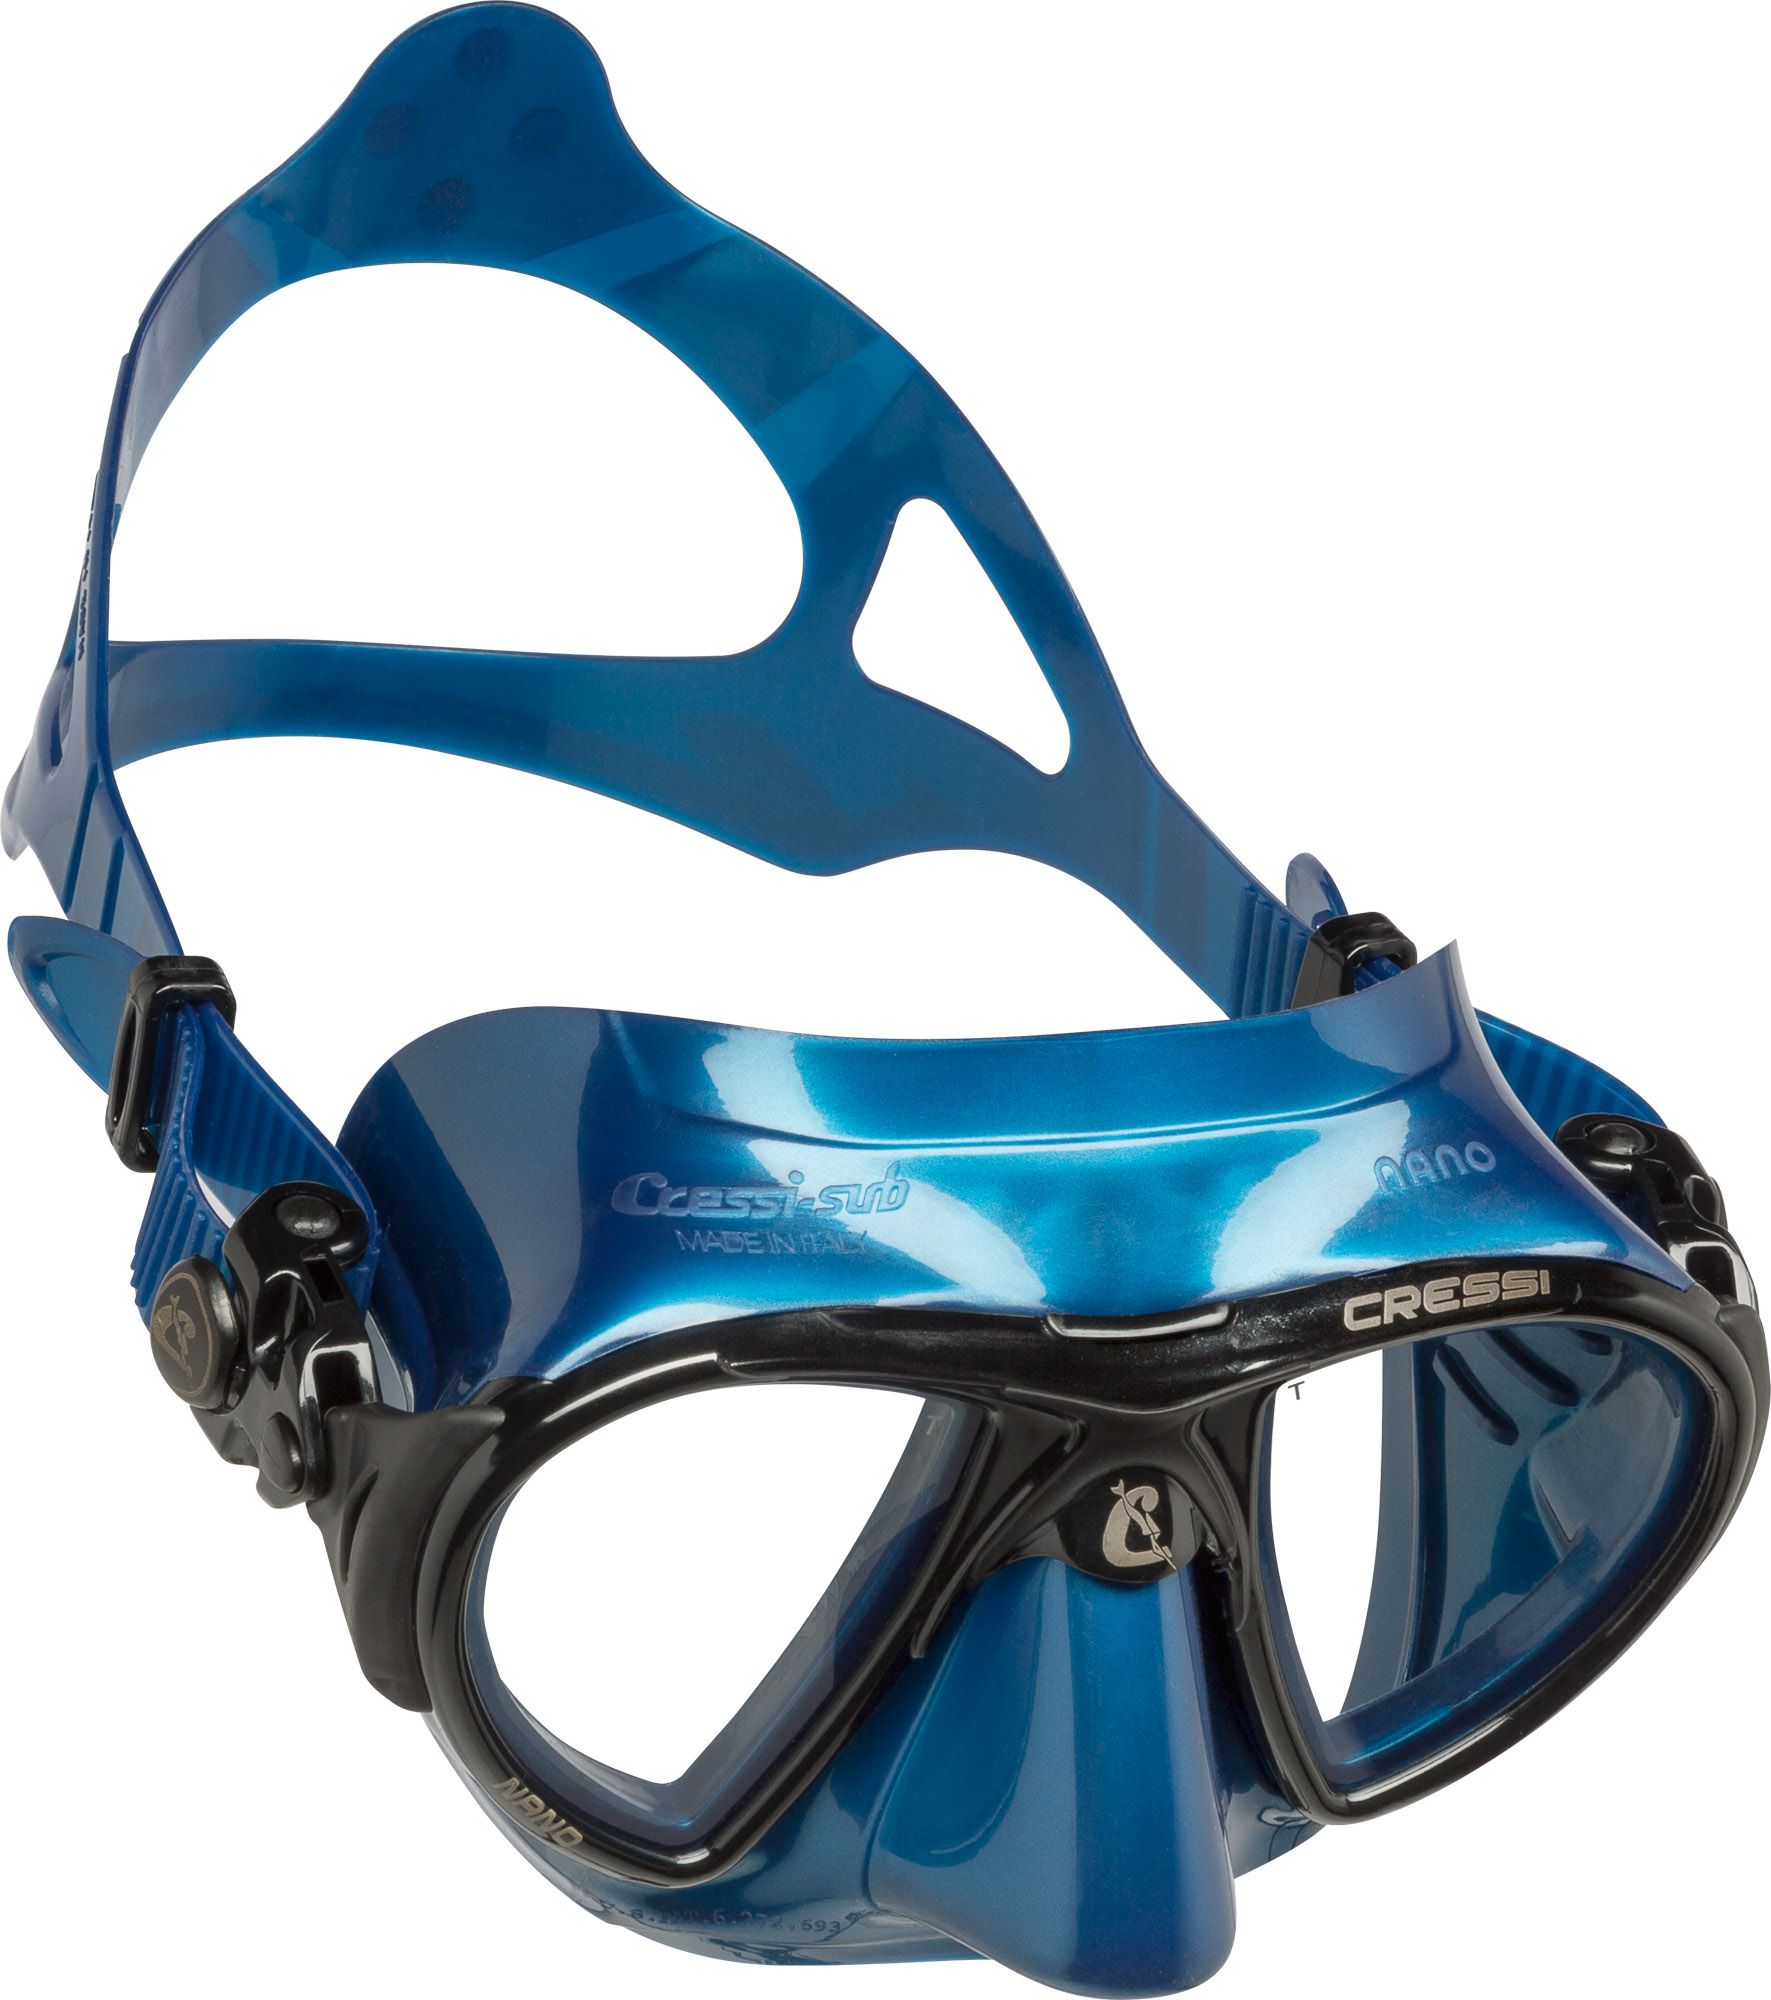 Photos - Swimming Mask Cressi Sub Cressi Nano Diving Mask, Blue/Black 20CREANNXXXXXXXXXSWE 